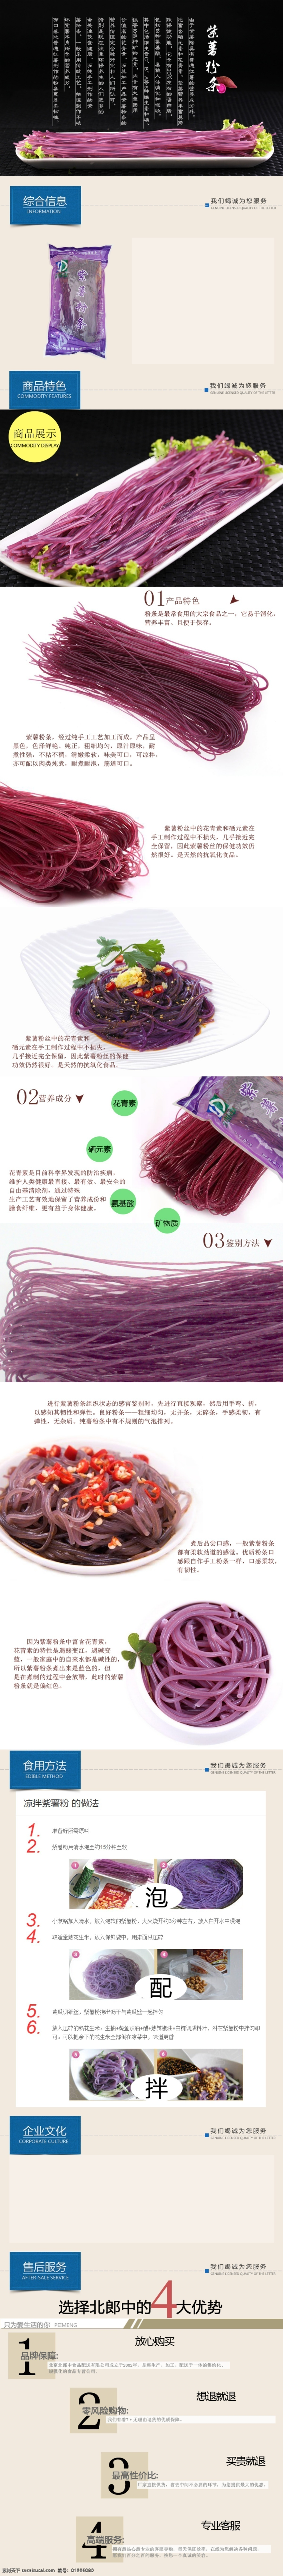 紫 薯粉 条 商品 详细 摸 版 高清 淘宝 紫薯 紫薯粉条 商品详细 摸版 白色